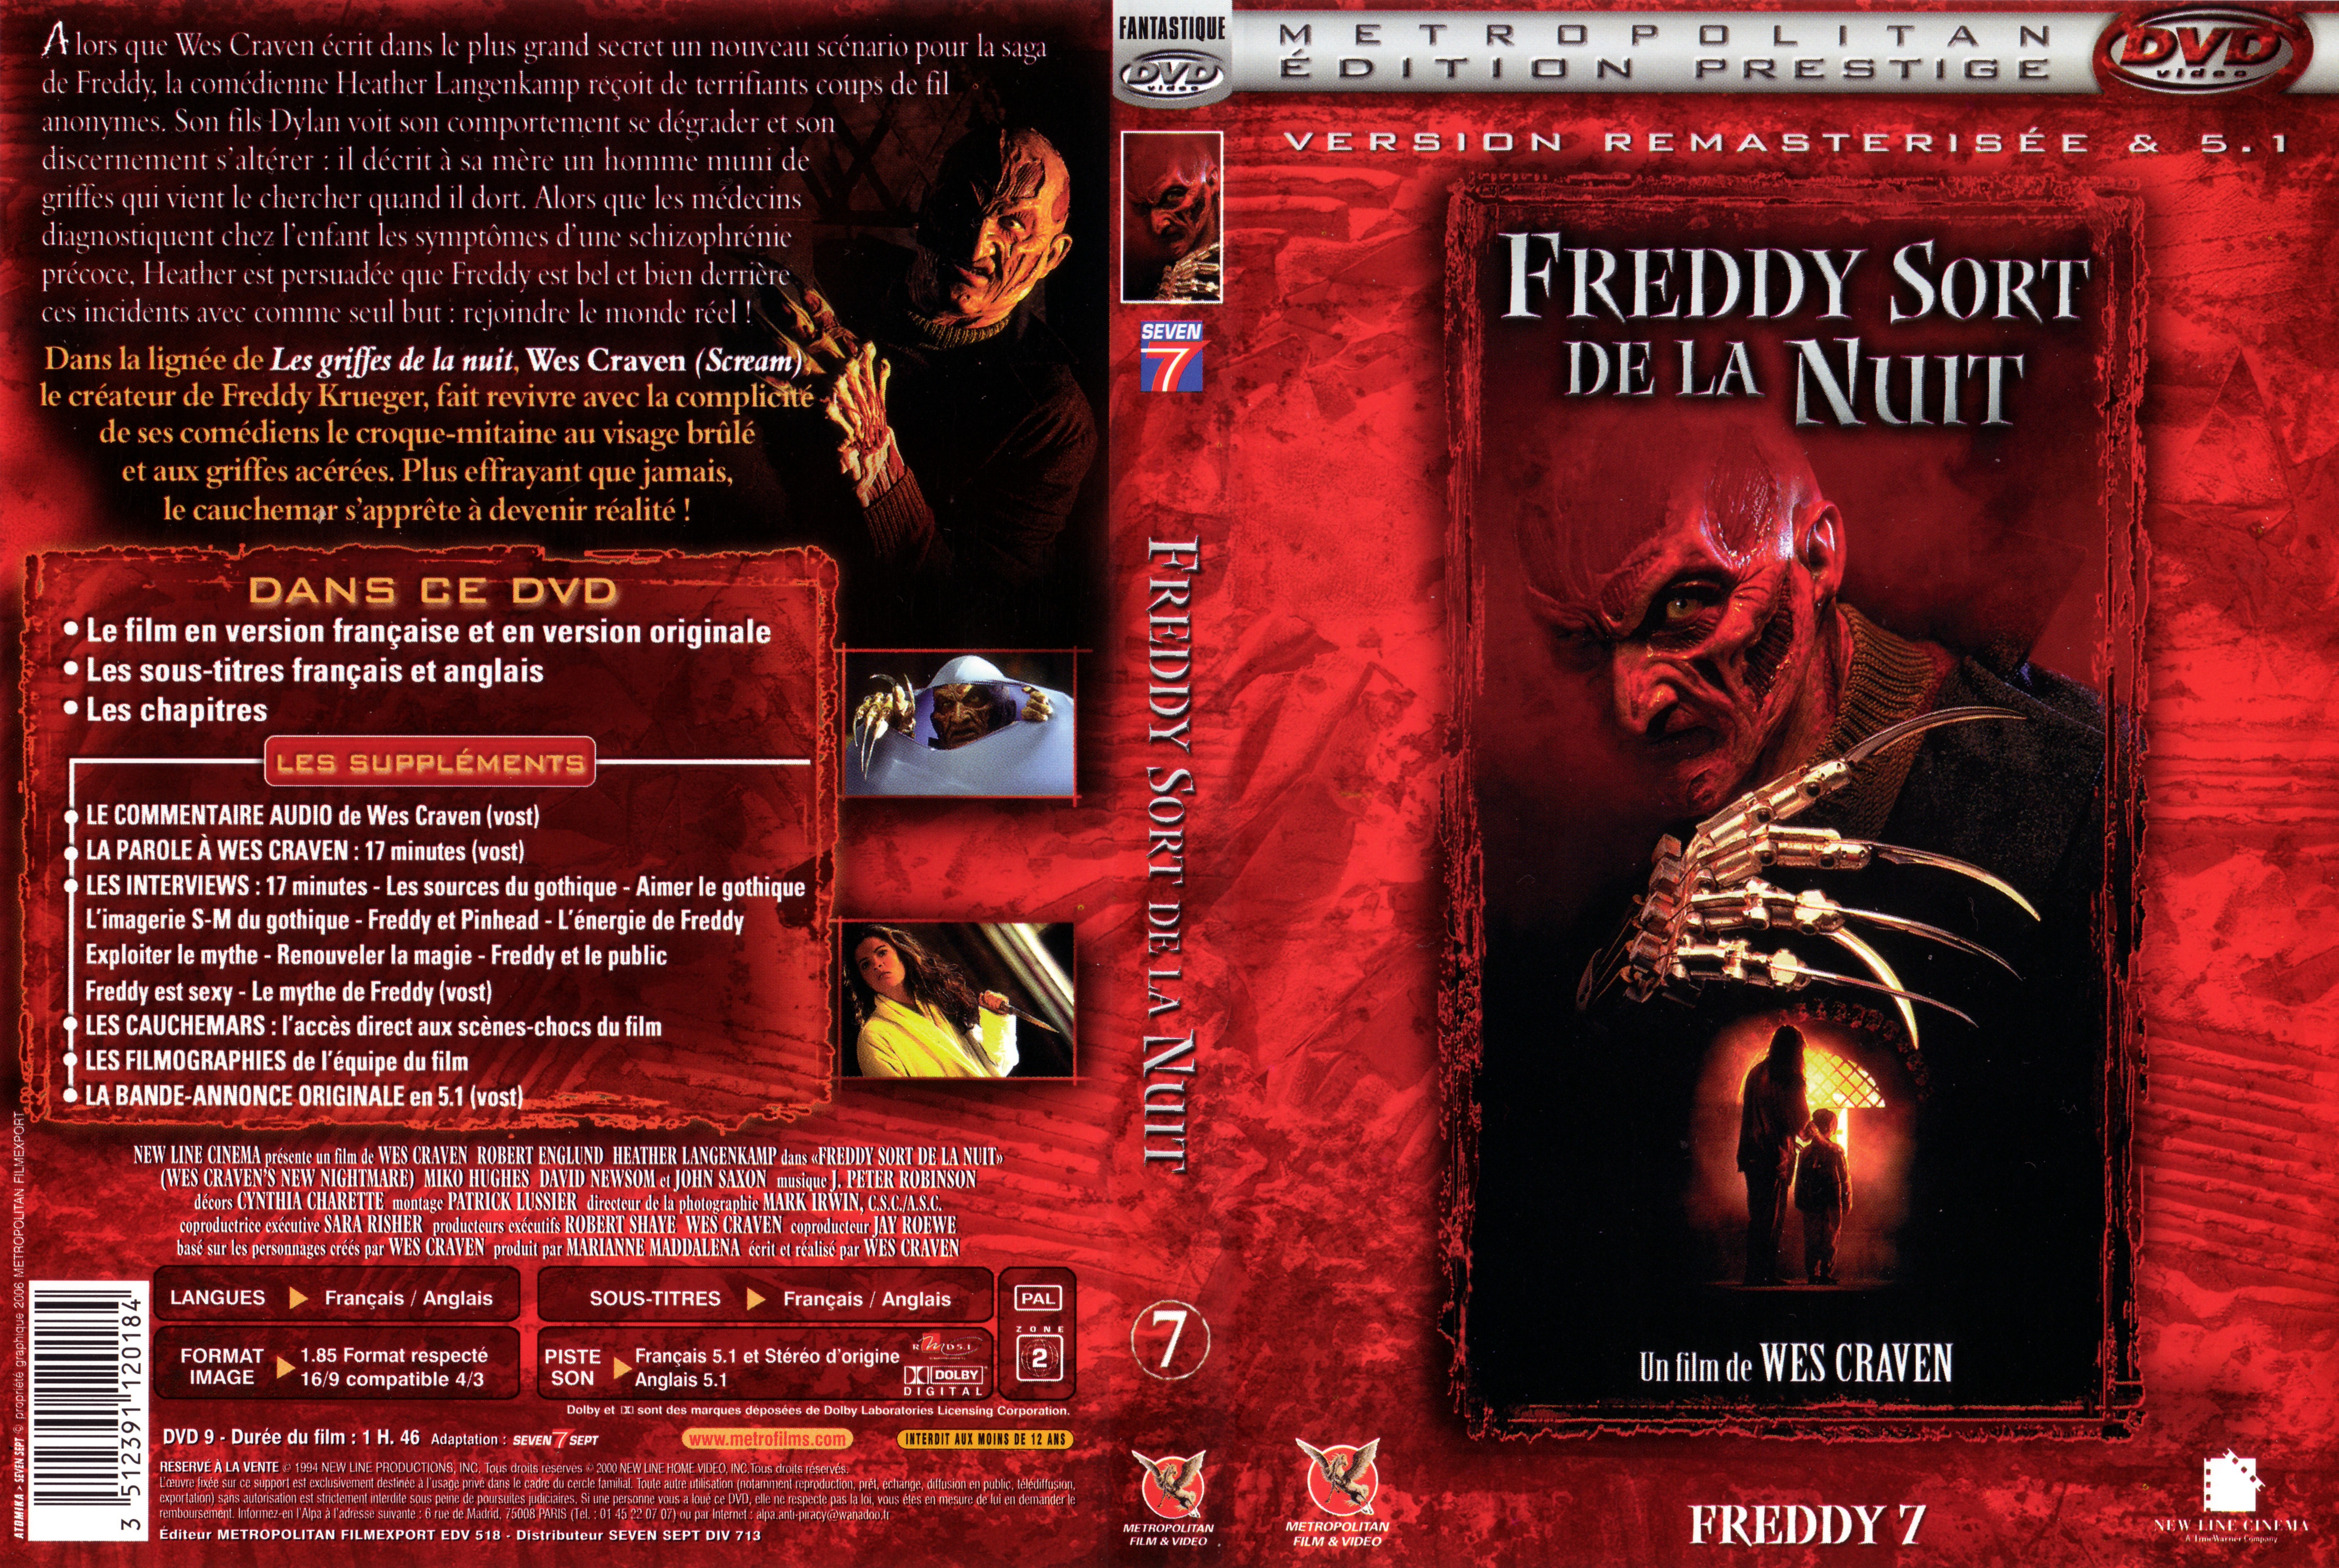 Jaquette DVD Freddy 7 Freddy sort de la nuit v3